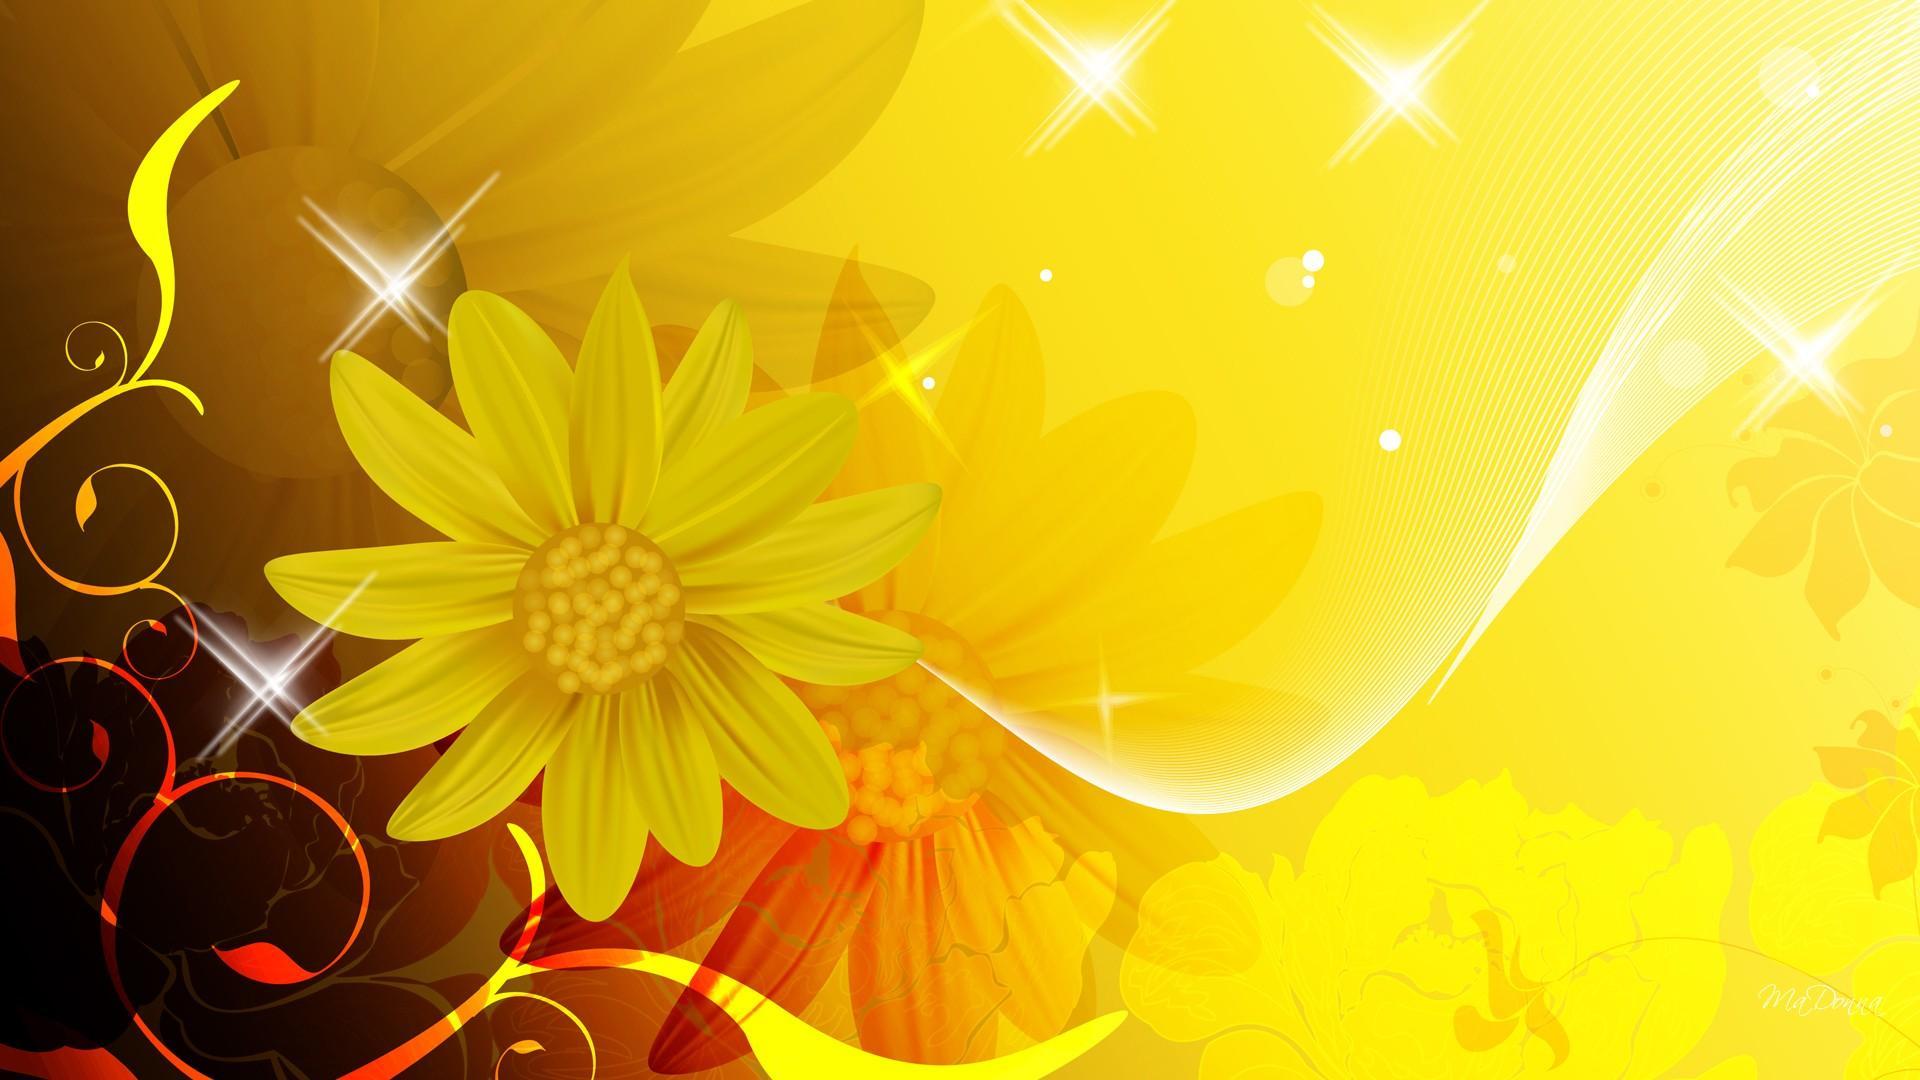 Màu vàng - màu sắc của sự sung túc, của tình yêu, của niềm hy vọng về tương lai. Những hình nền màu vàng sẽ giúp bạn đón nhận những điềm lành, những cảm xúc tốt đẹp nhất để tràn đầy năng lượng cả ngày dài.